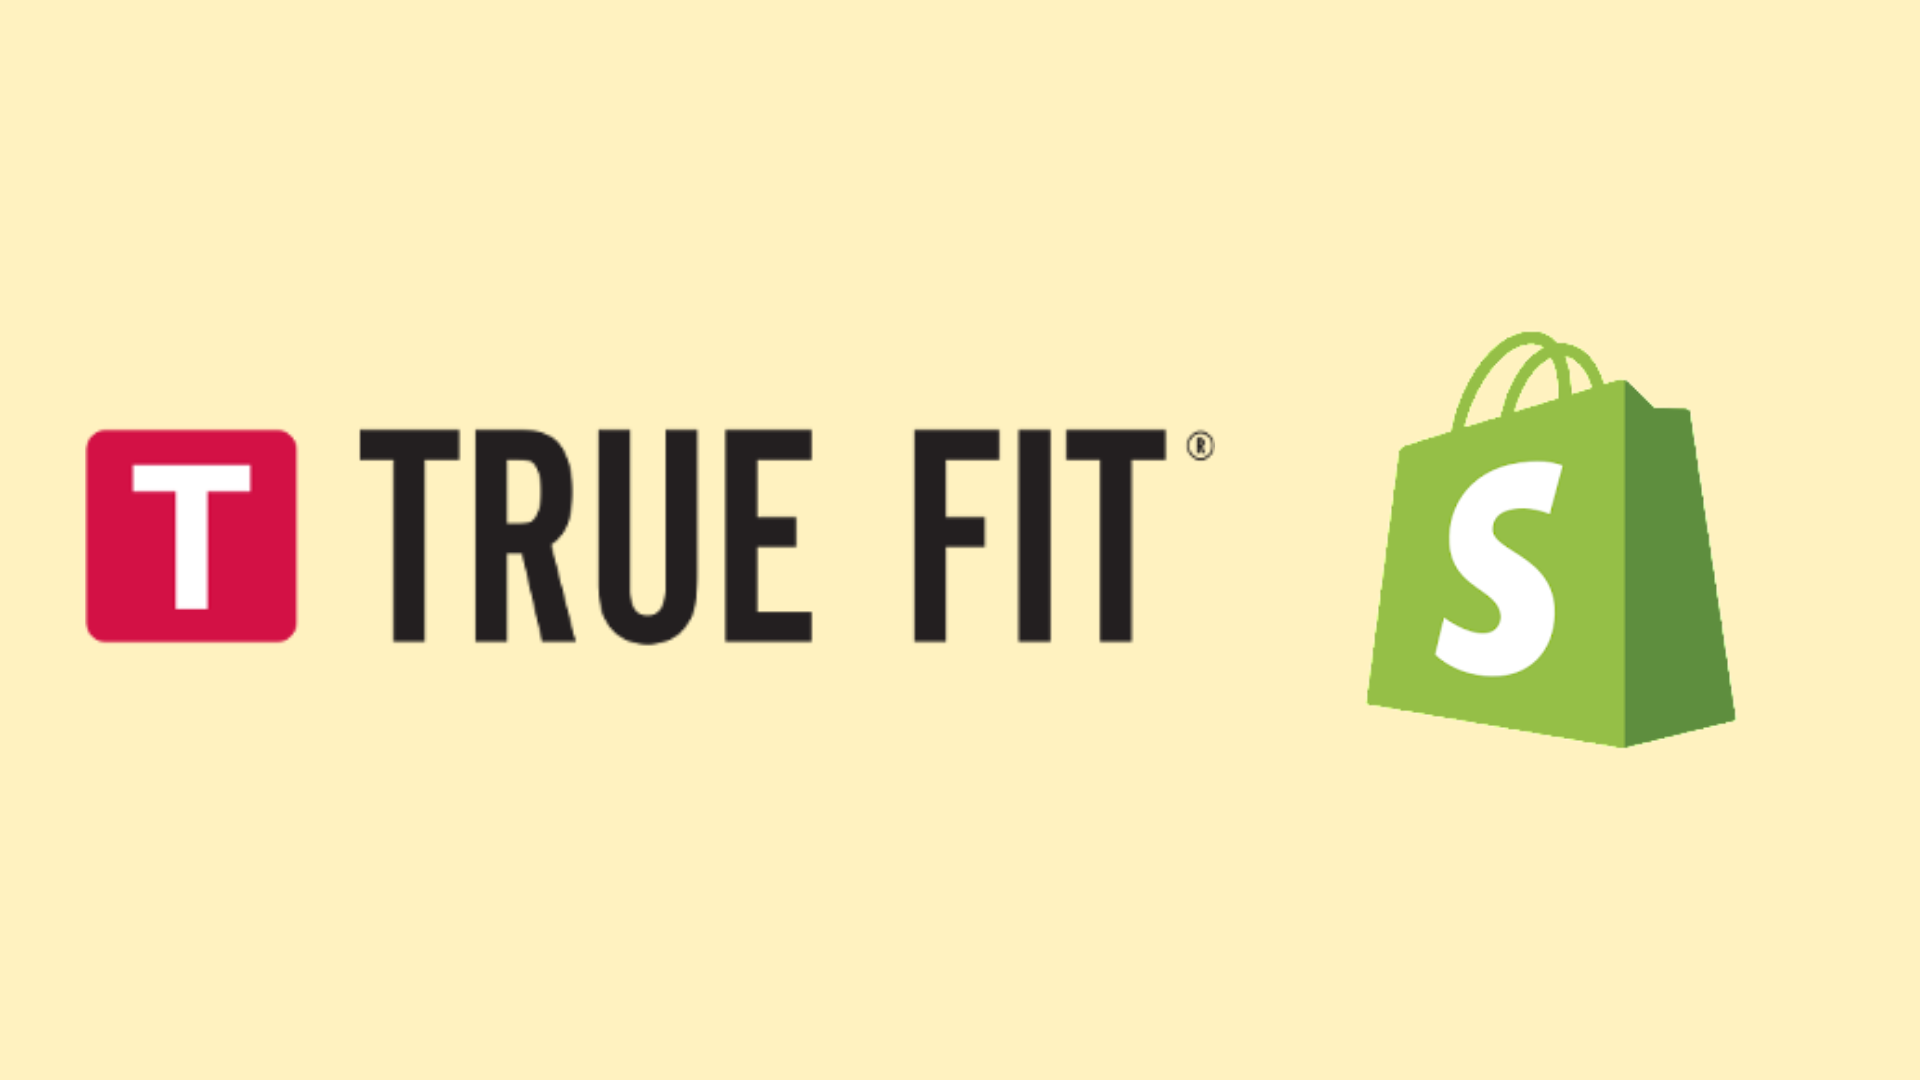 logos True Fit et Shopify, impliquant leur dernière collaboration pour l'intégration de l'IA